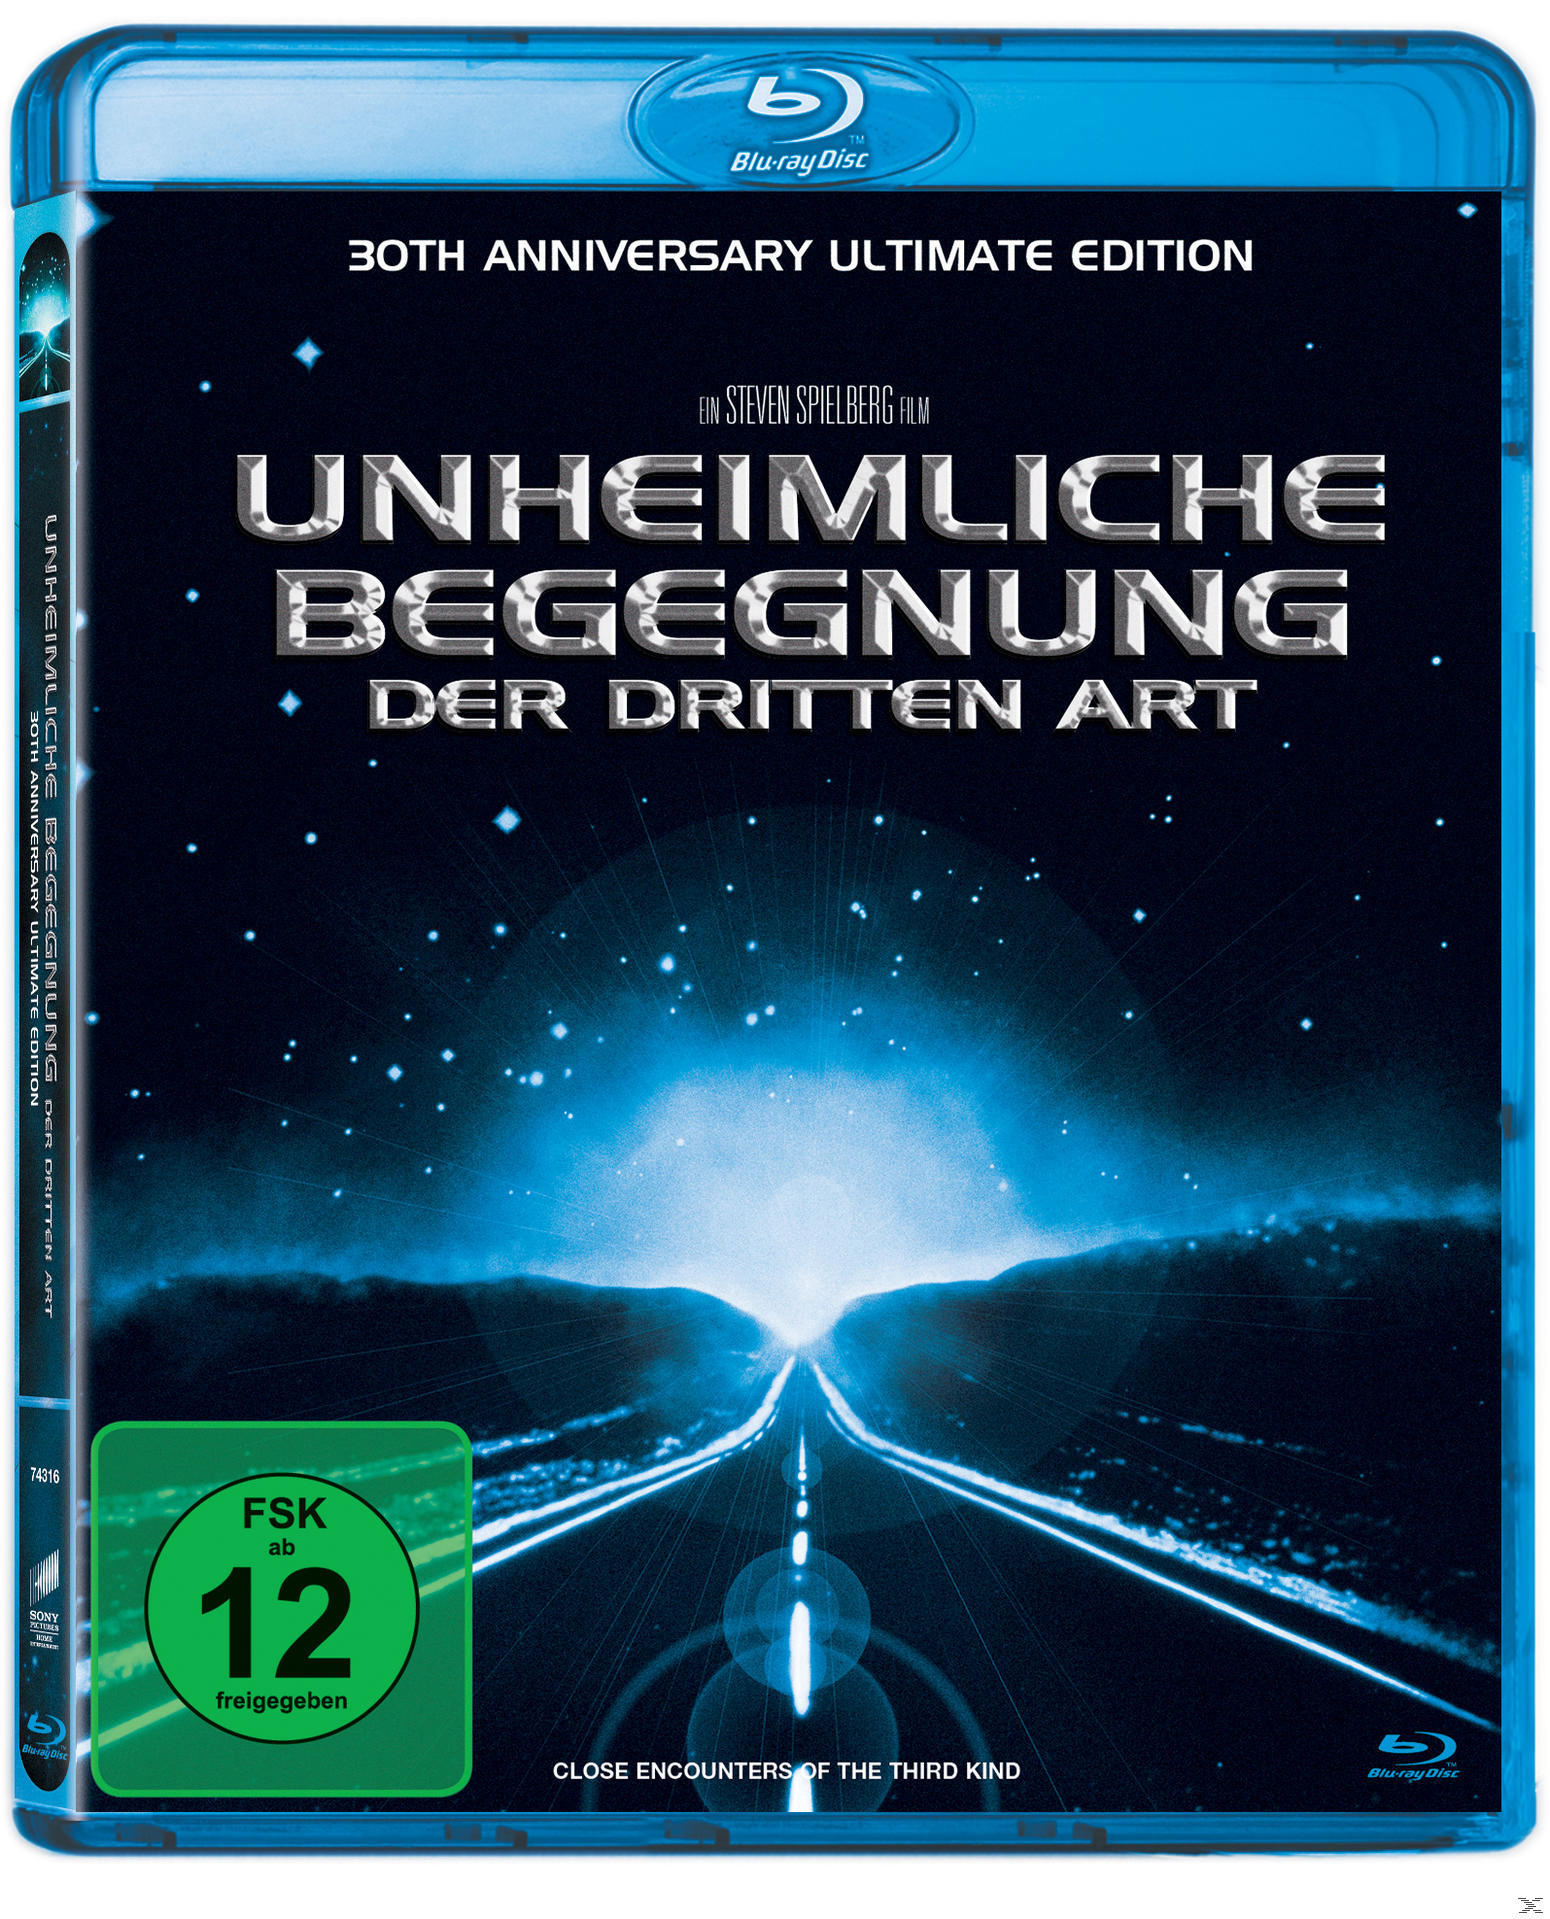 Ultimate dritten (30th der Blu-ray Unheimliche Edition) Anniversary Begegnung Art